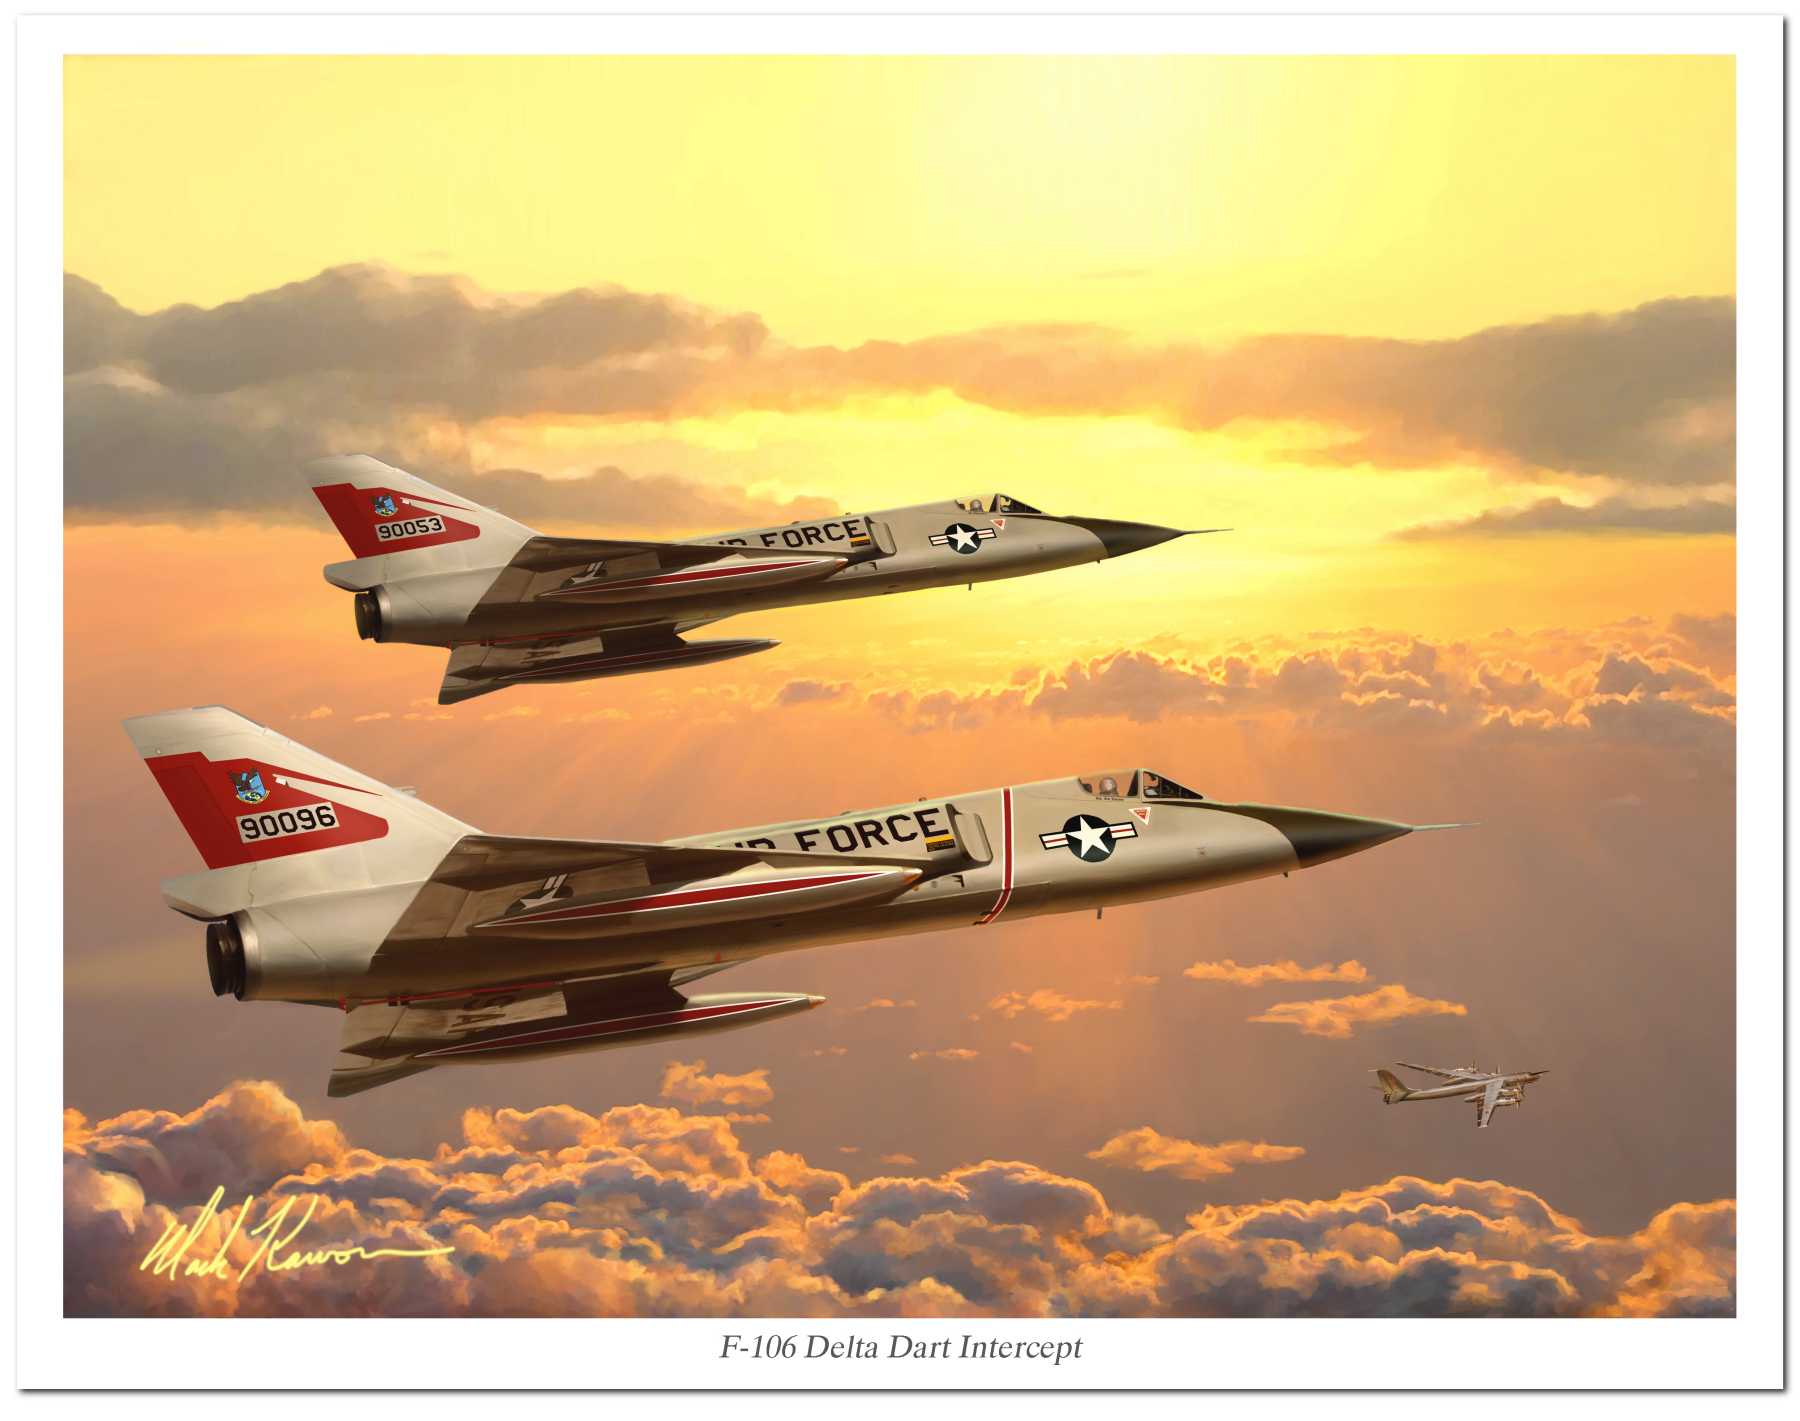 "F-106 Delta Dart Intercept" by Mark Karvon, featuring the USAF F-16 Delta Dart